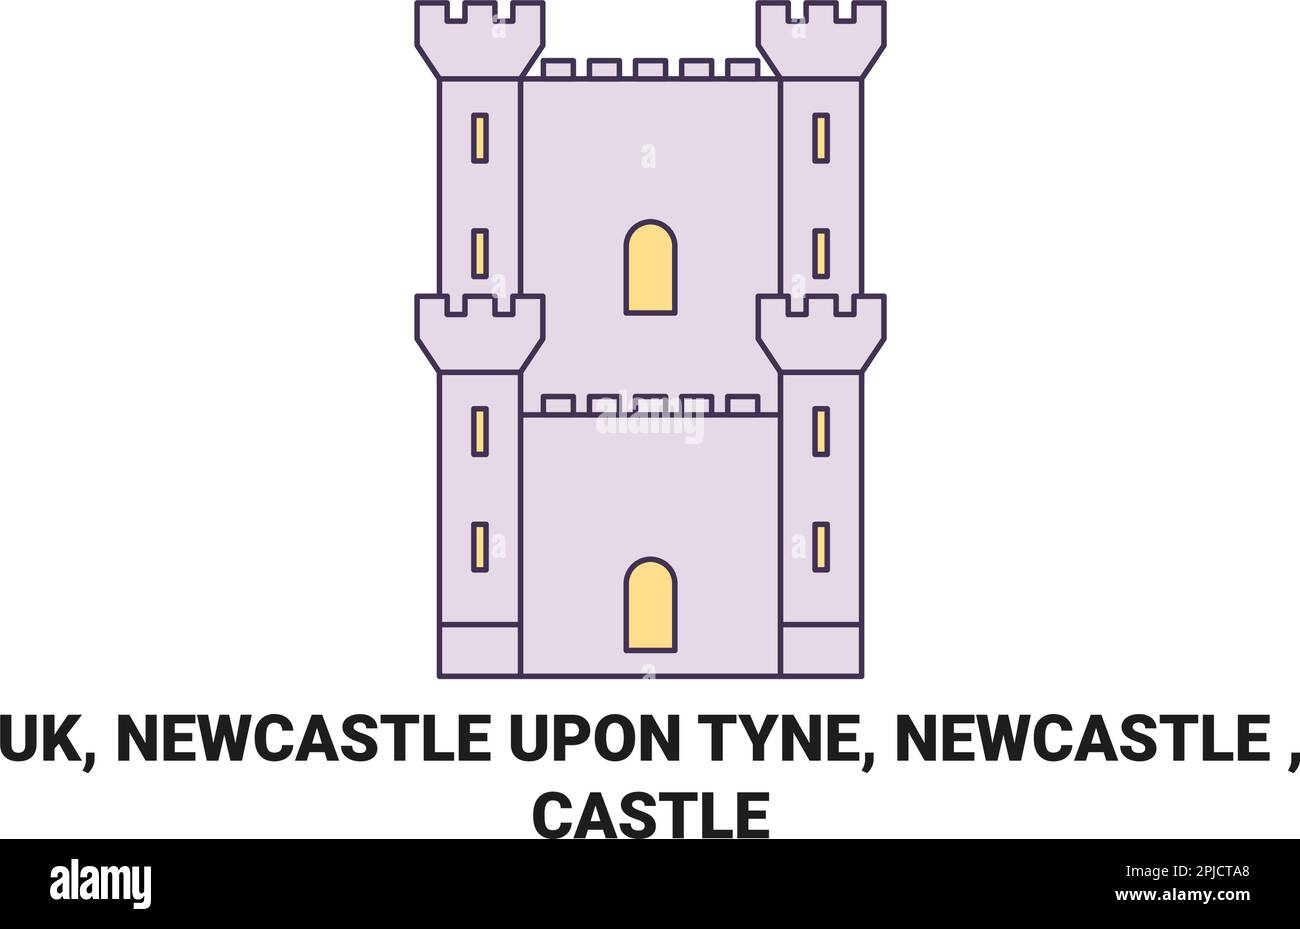 Angleterre, Newcastle upon Tyne, Newcastle , Castle voyage illustration vecteur de repère Illustration de Vecteur